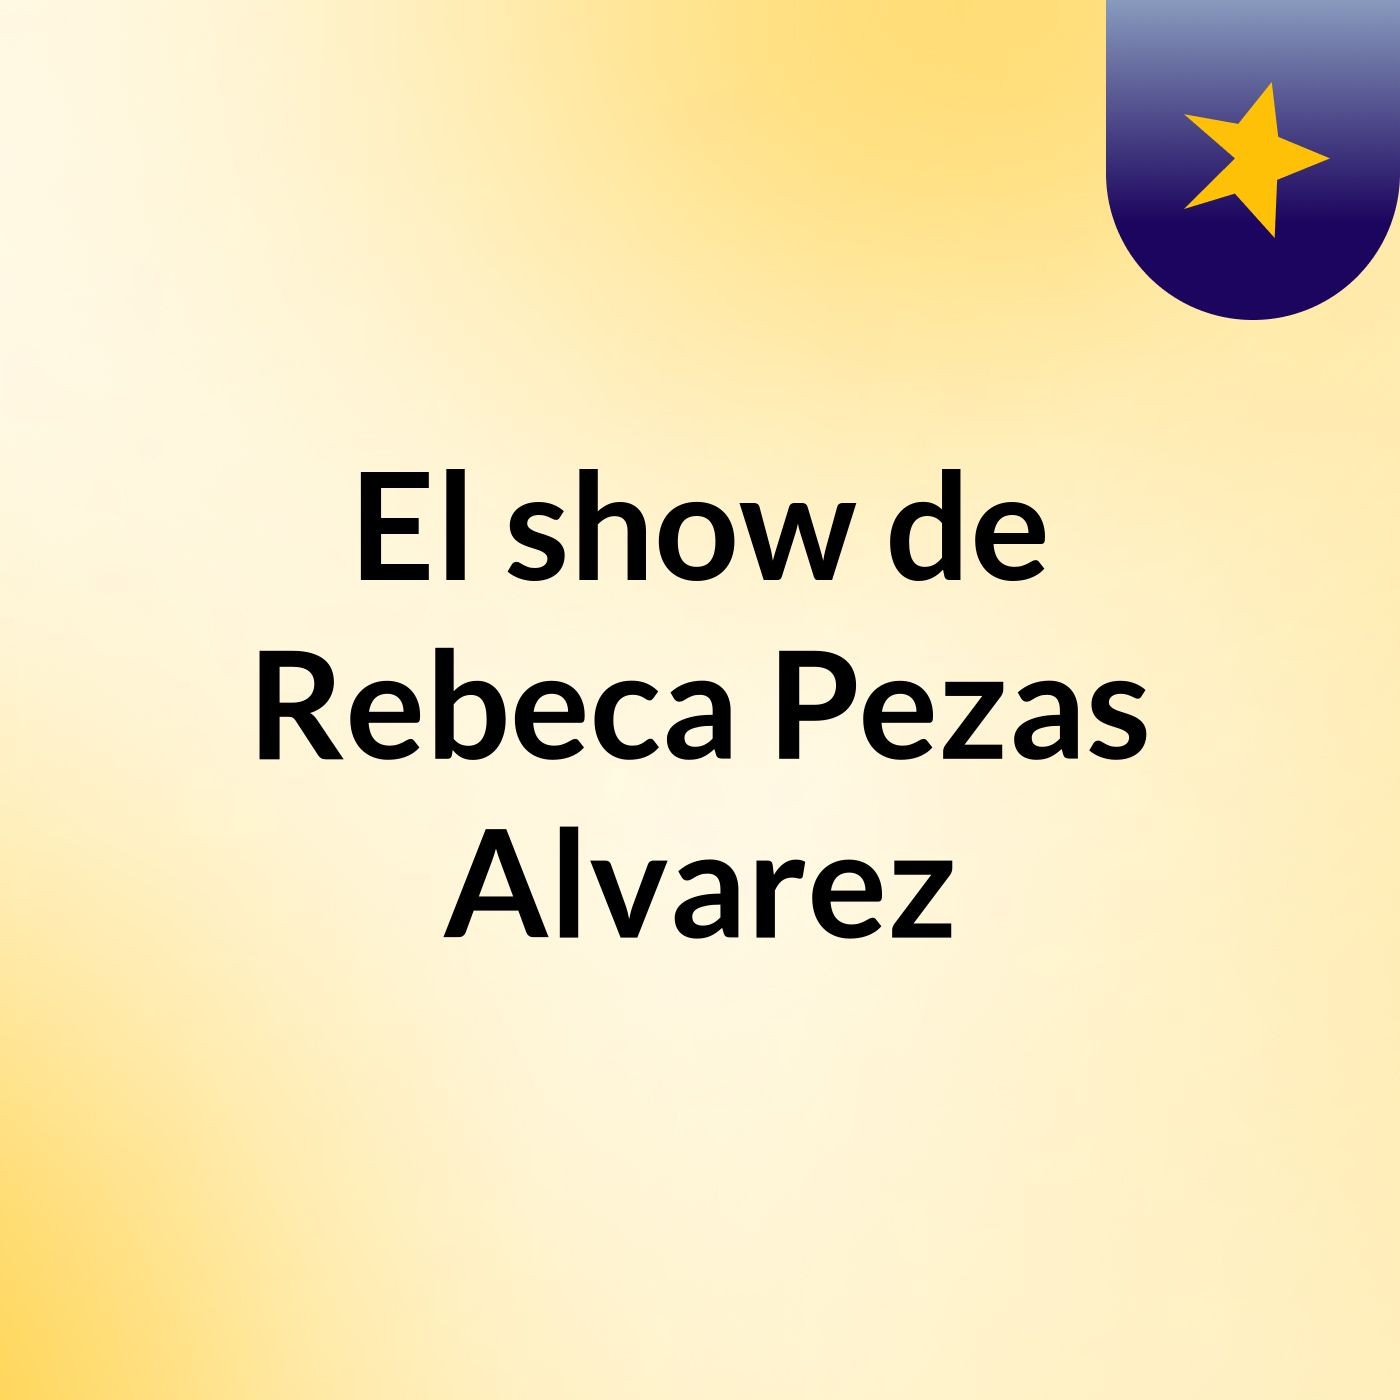 El show de Rebeca Pezas Alvarez